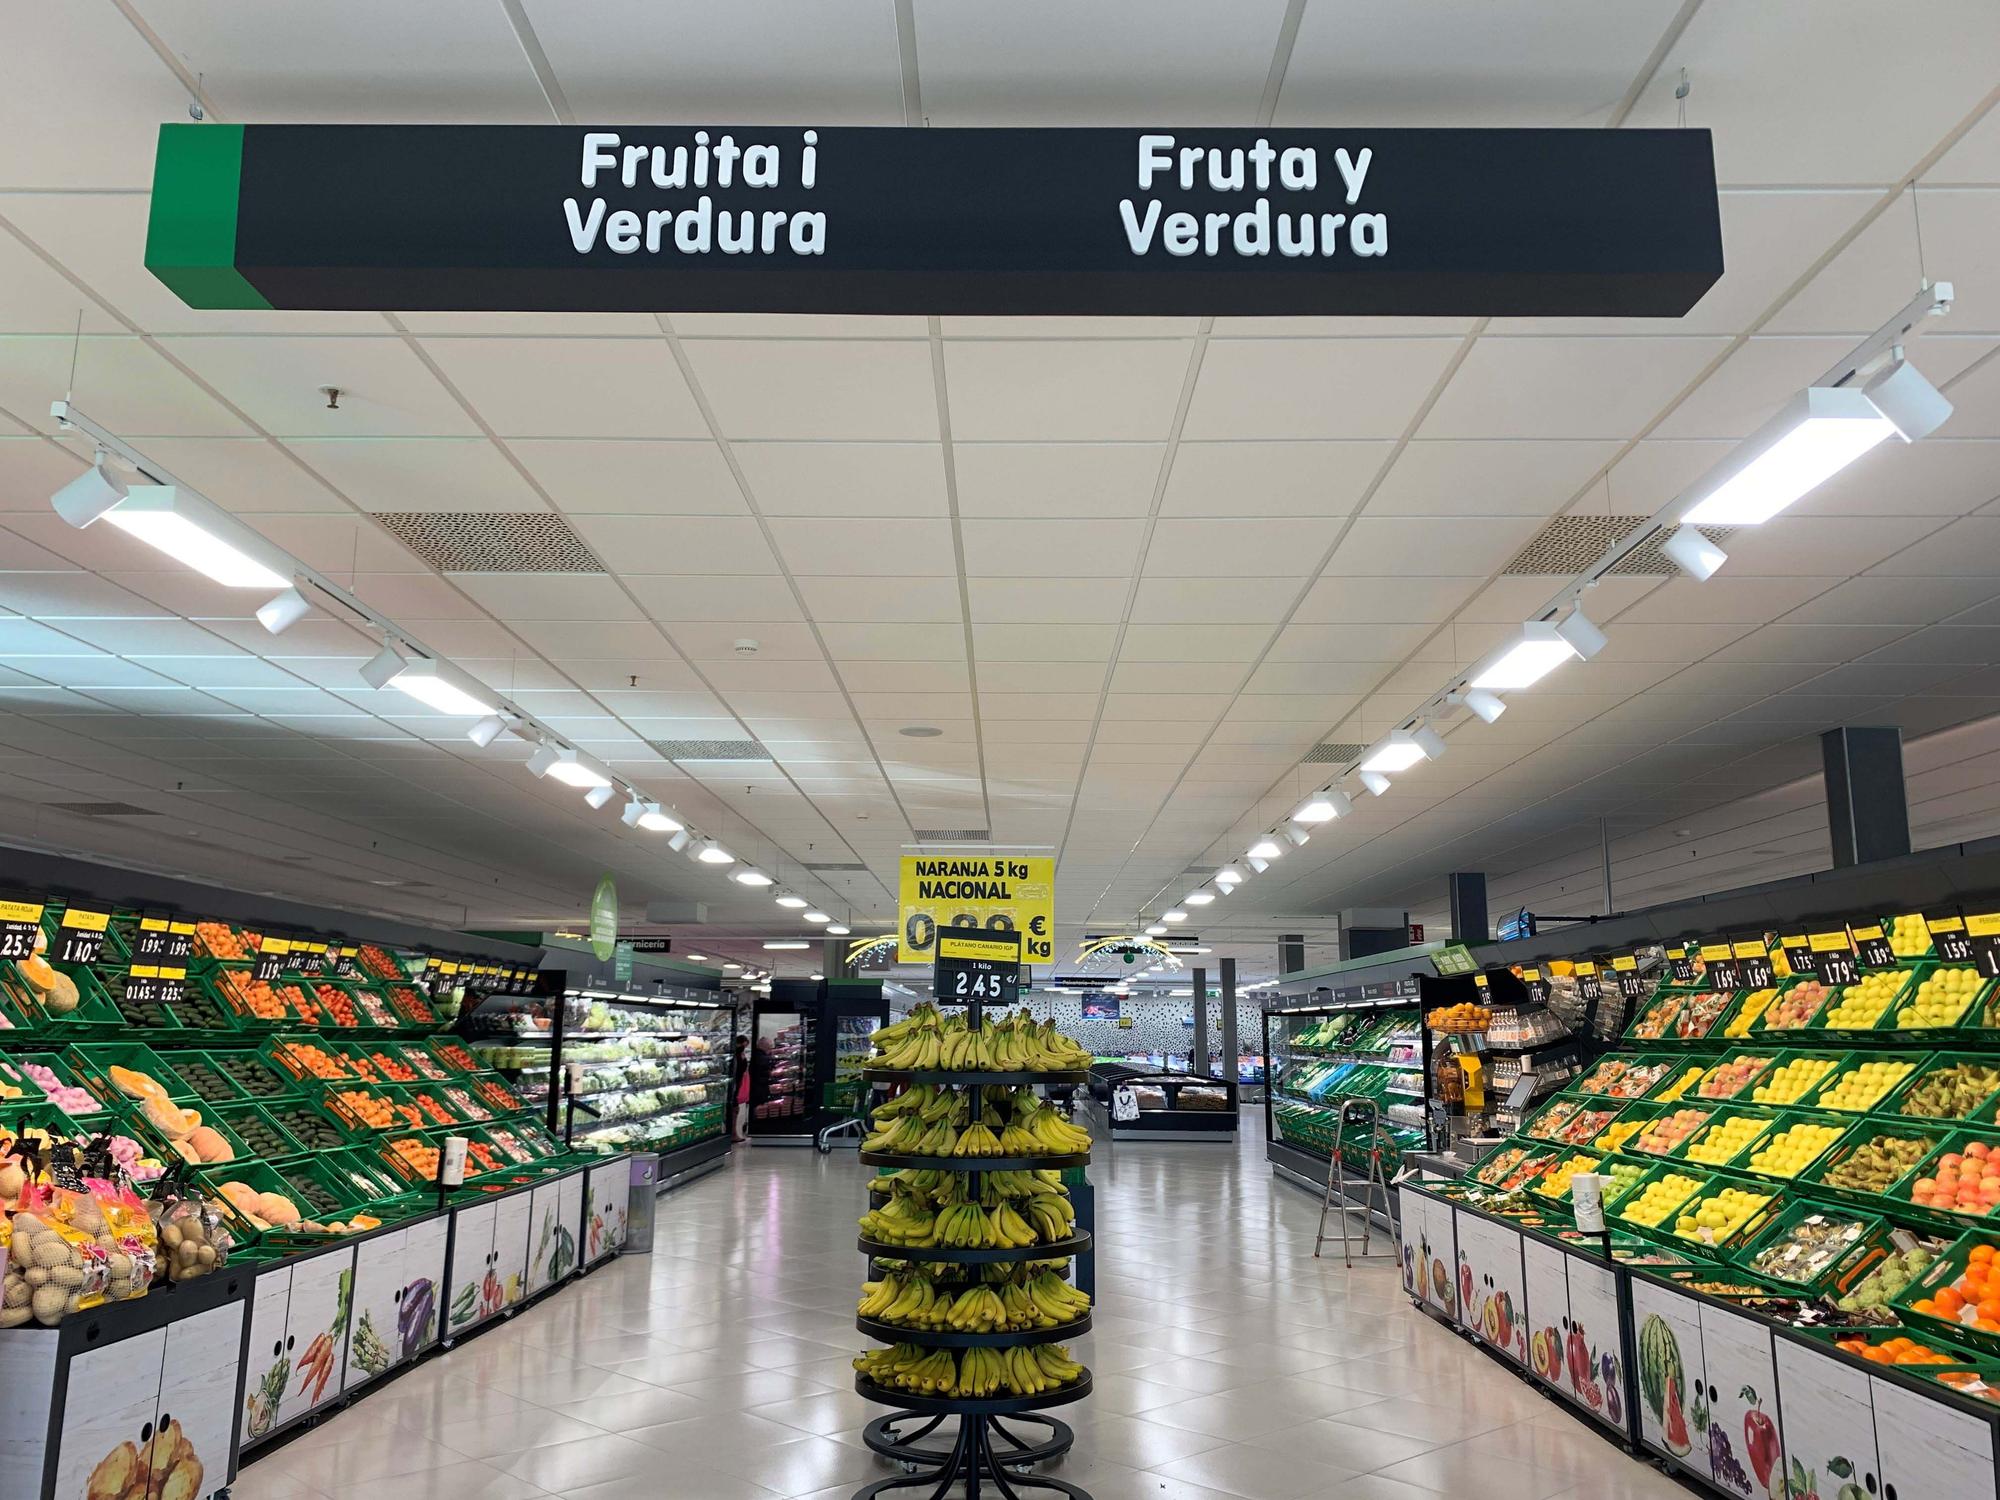 Fruta y Verdura del nuevo supermercado inaugurado en Ontinyent.jpg